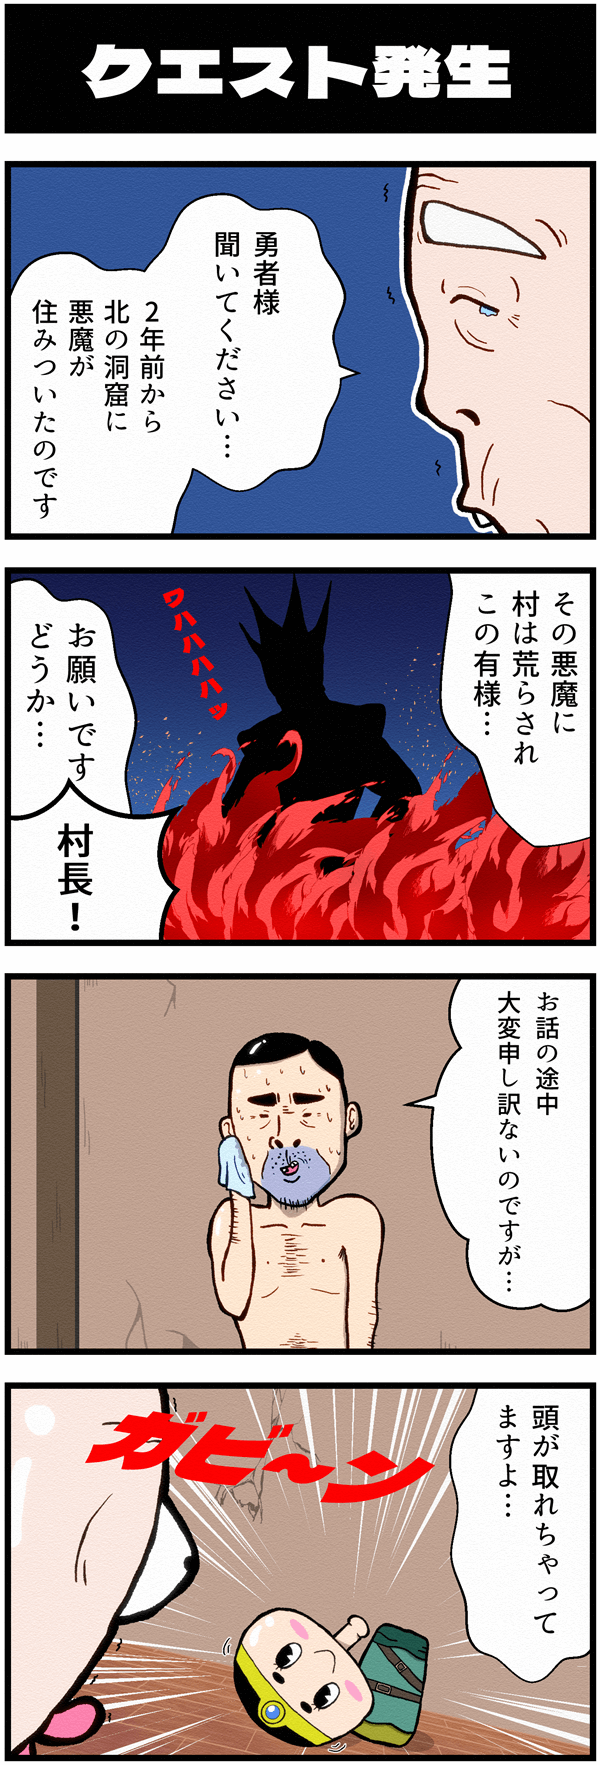 4コマ漫画勇者こけし第二話「クエスト発生」